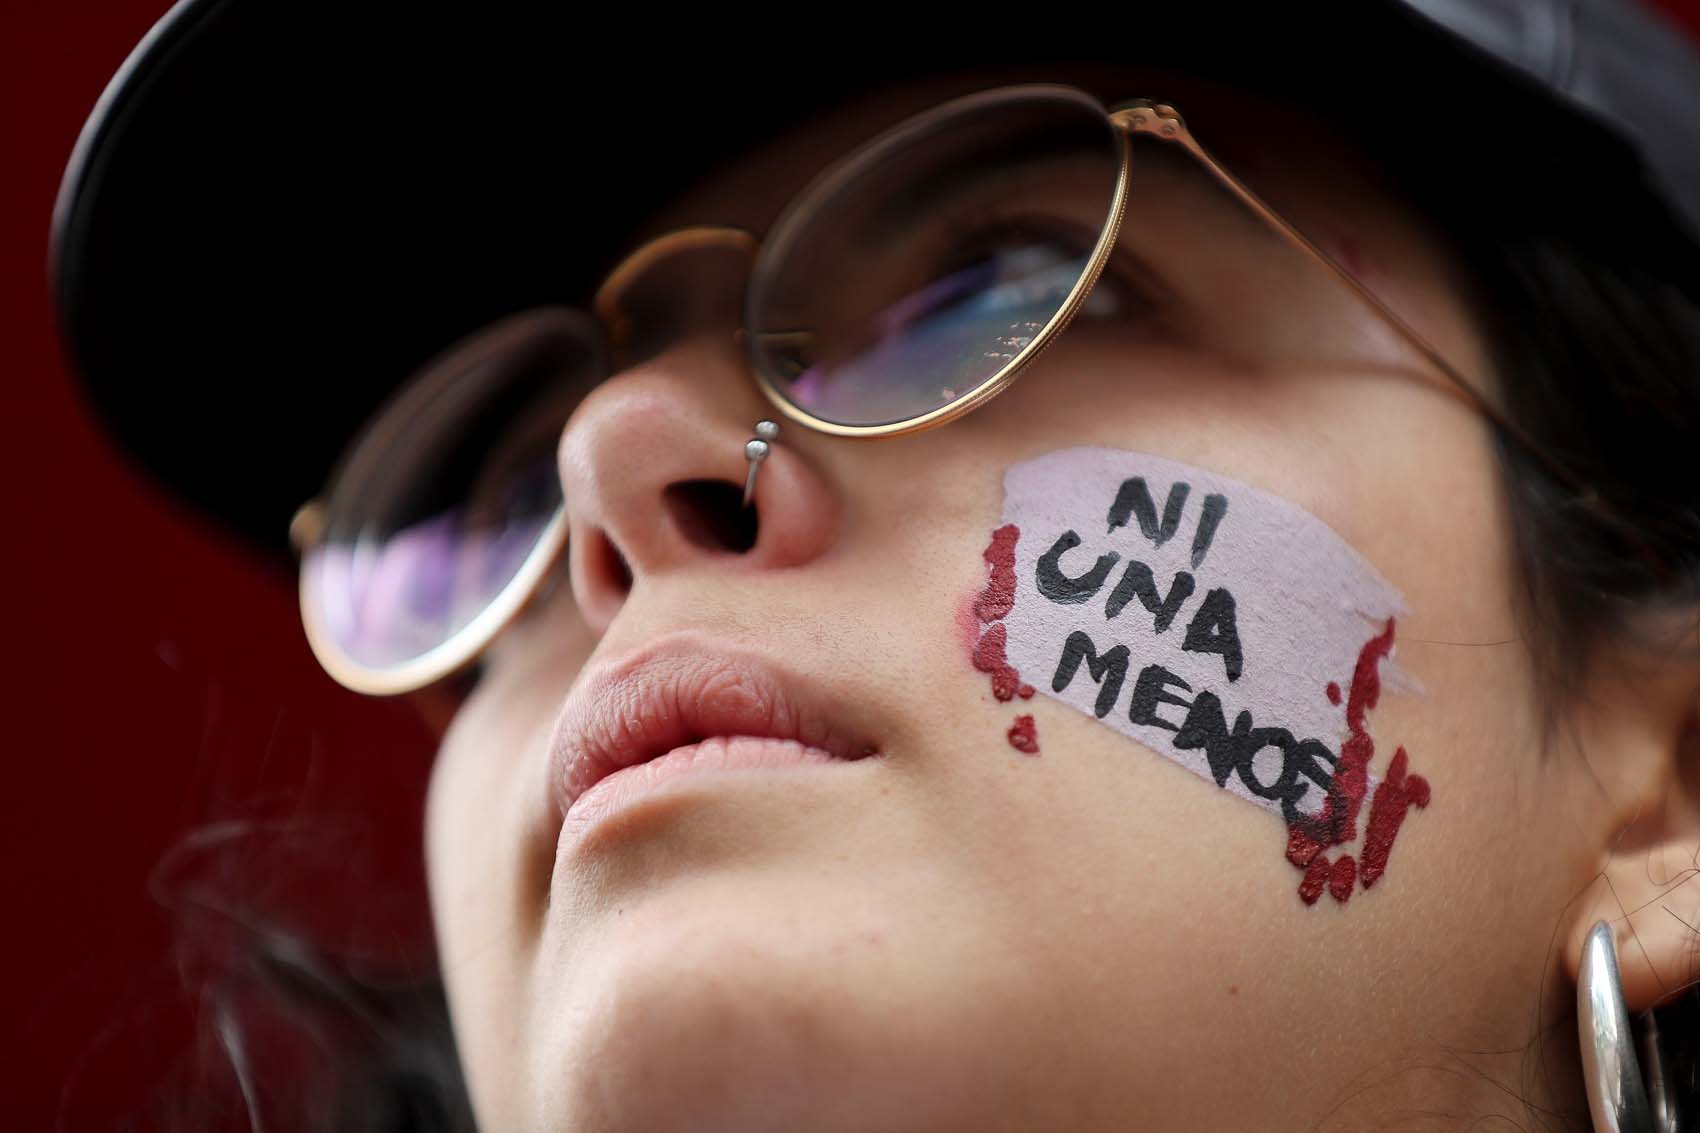 En Venezuela se registraron 167 casos de femicidio durante 2019 (Infografía)